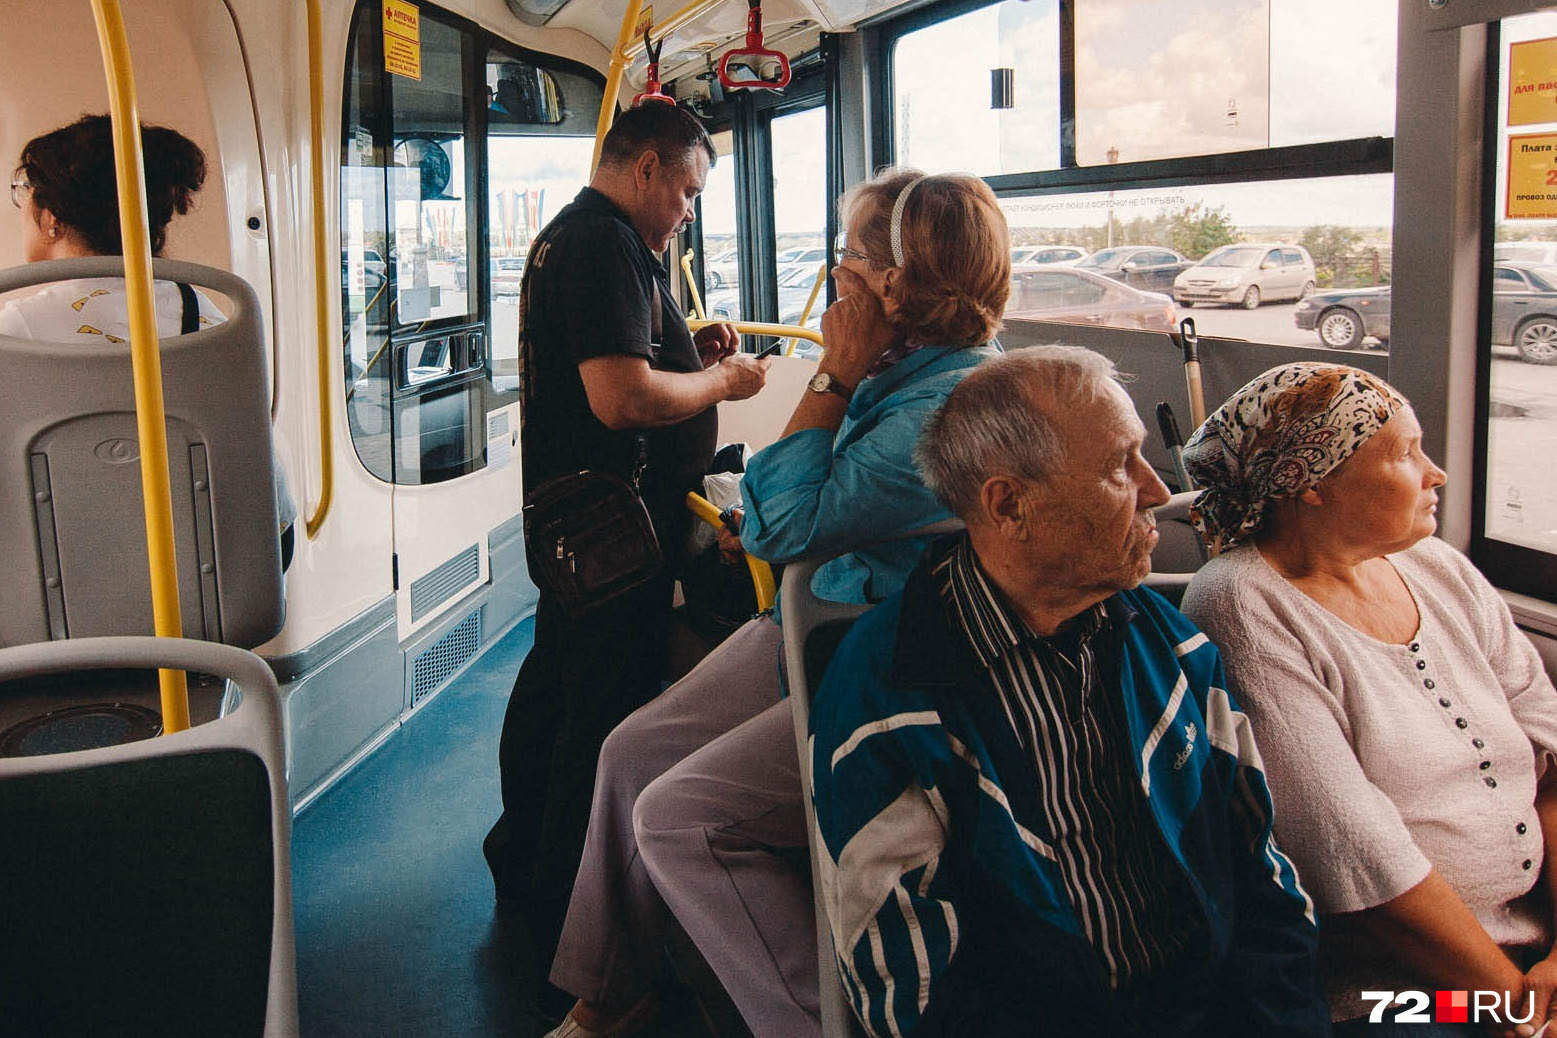 Включи 3 автобуса. Салон автобуса с людьми. Фото в автобусе днем. Дачный автобус. Скоростной городской транспорт.